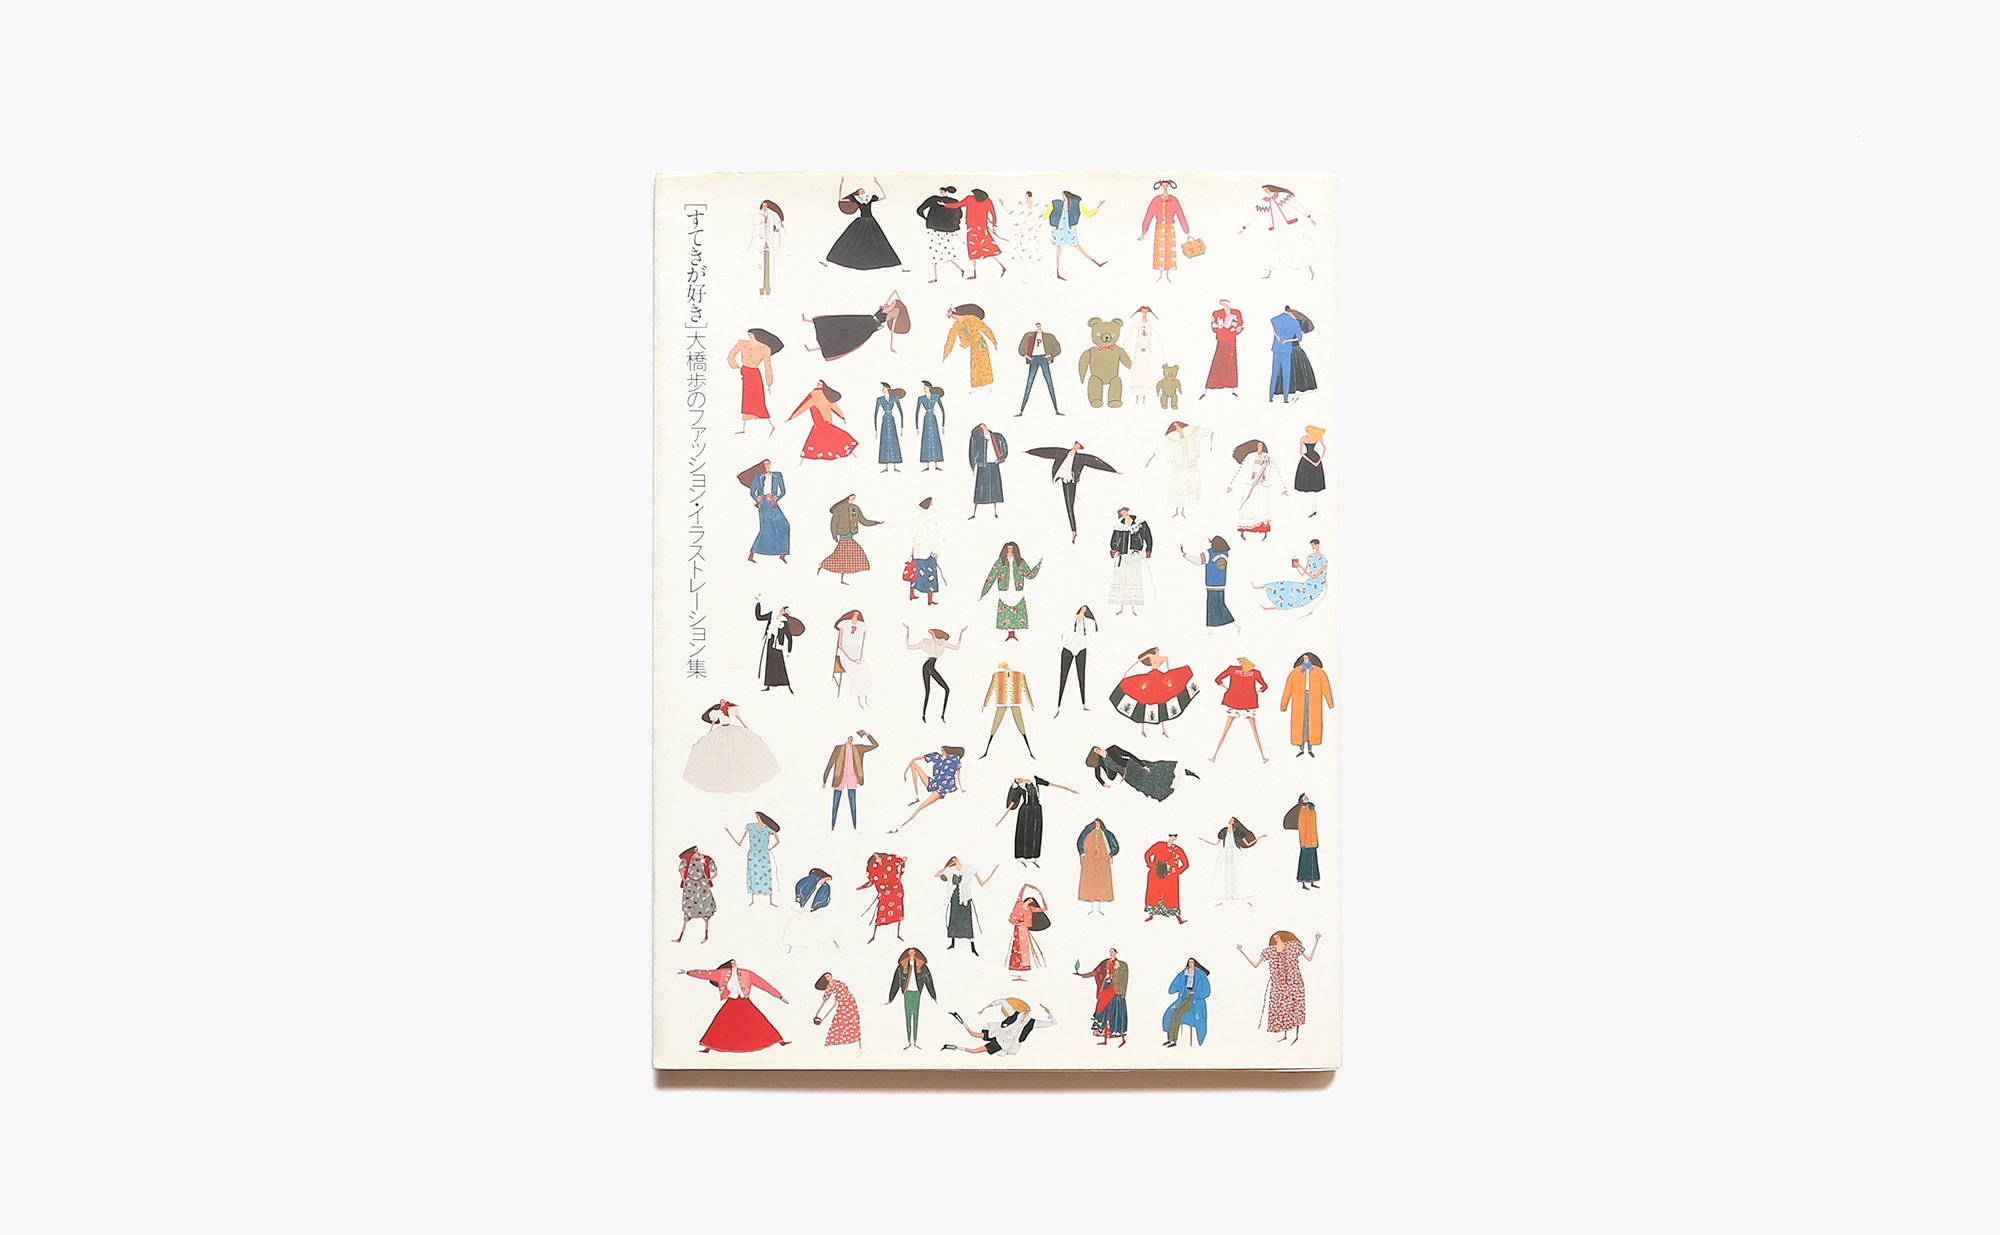 すてきが好き 大橋歩のファッション・イラストレーション集